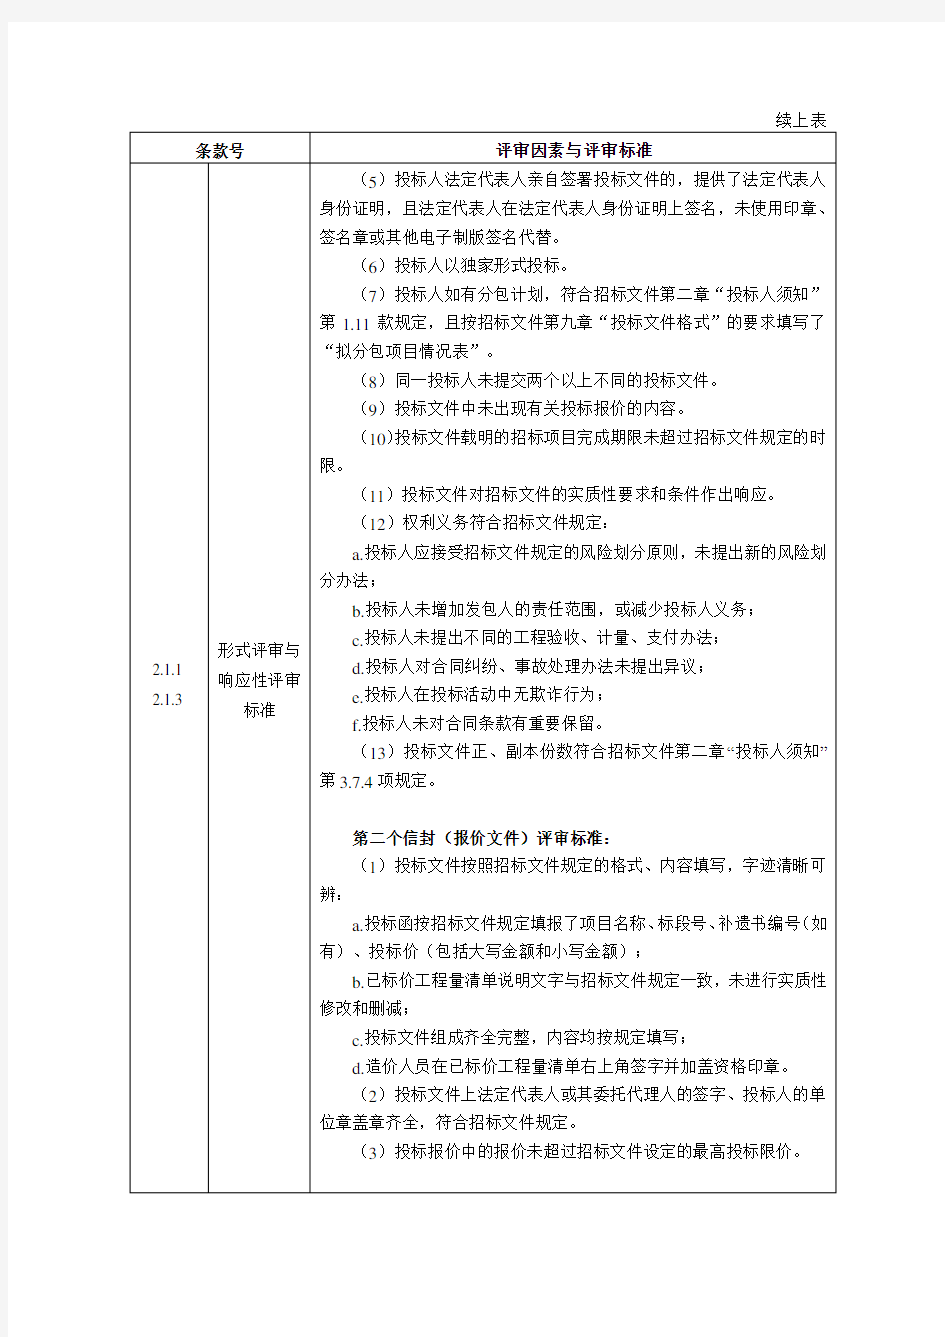 公路工程标准施工招标文件-中华人民共和国交通运输部